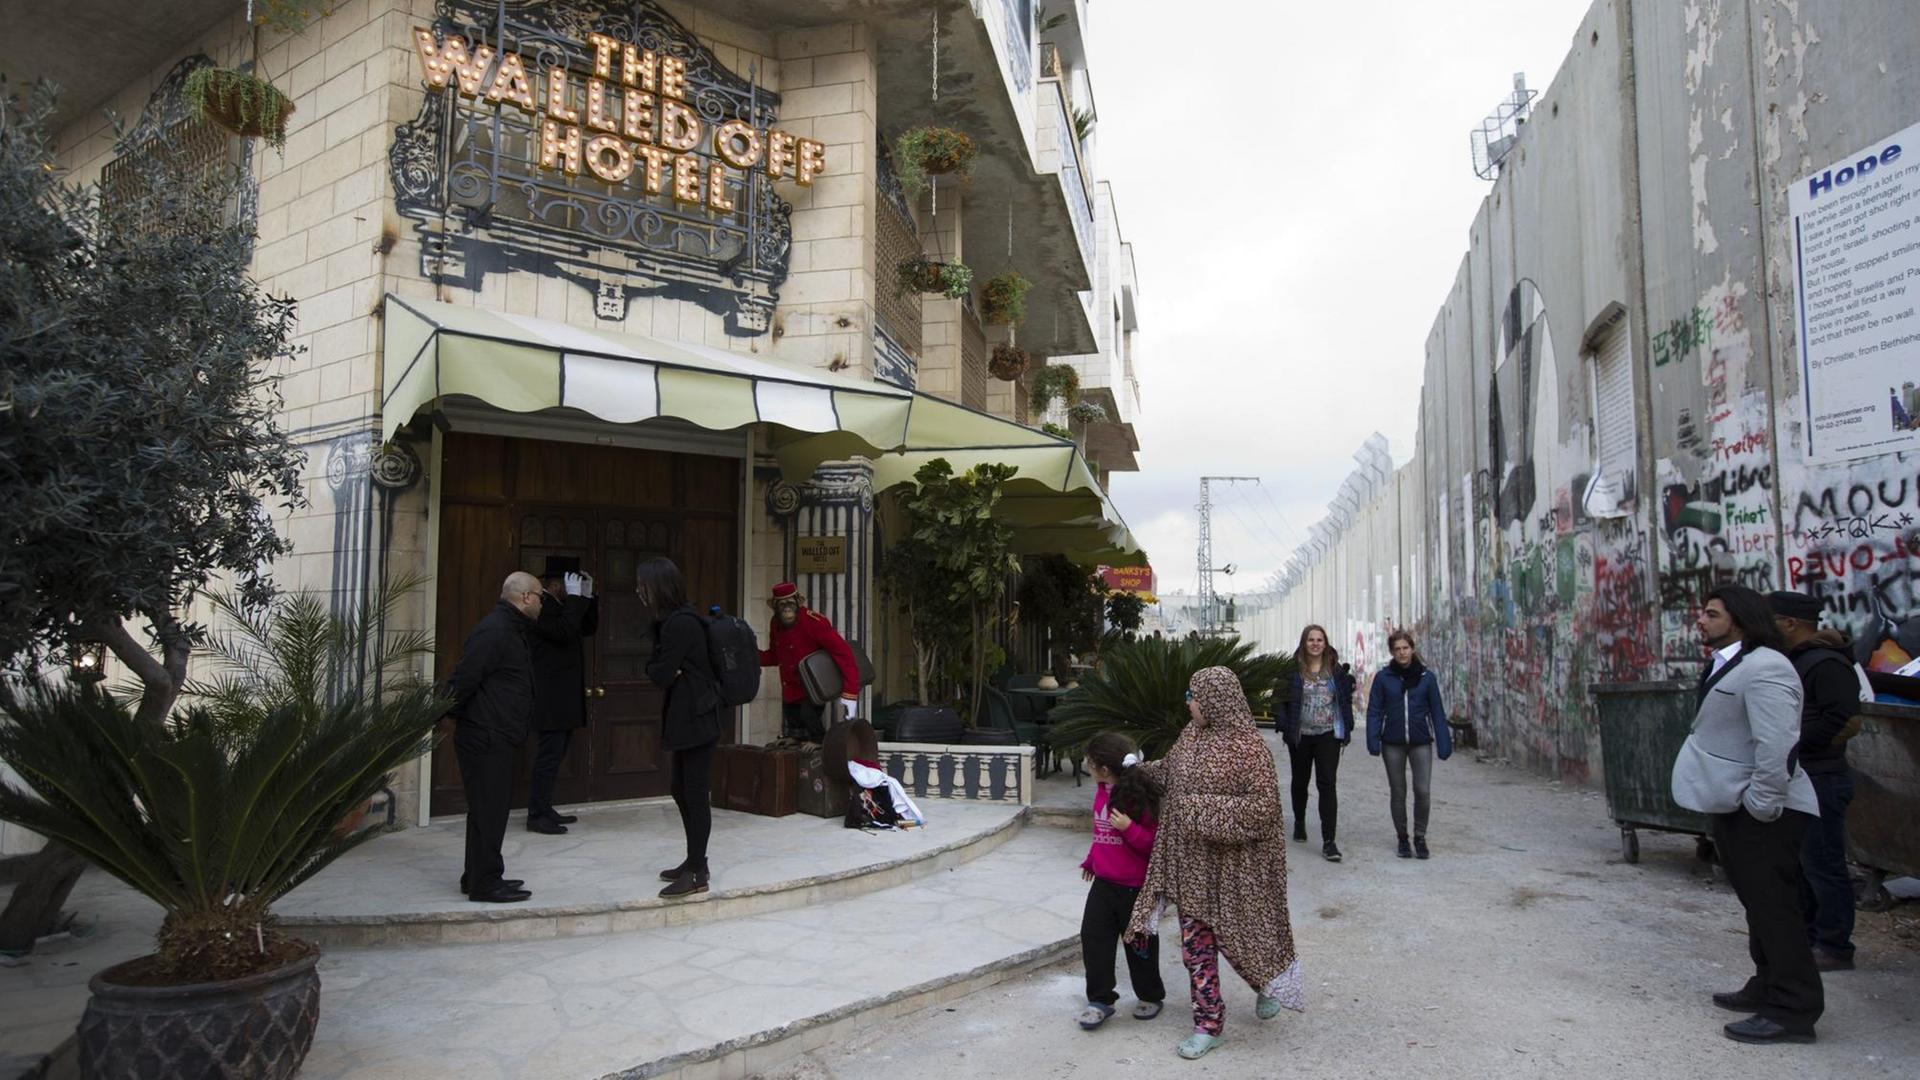 Passanten gehen in Bethlehem (Westjordanland) am Eingangsbereich des "The Walled Off Hotel" und israelischen Sperranlagen vorüber. Das Hotel in der Nähe der israelischen Sperranlagen zeigt Motive des Künstlers Banksy und wirbt mit dem "schlechtesten Blick der Welt".